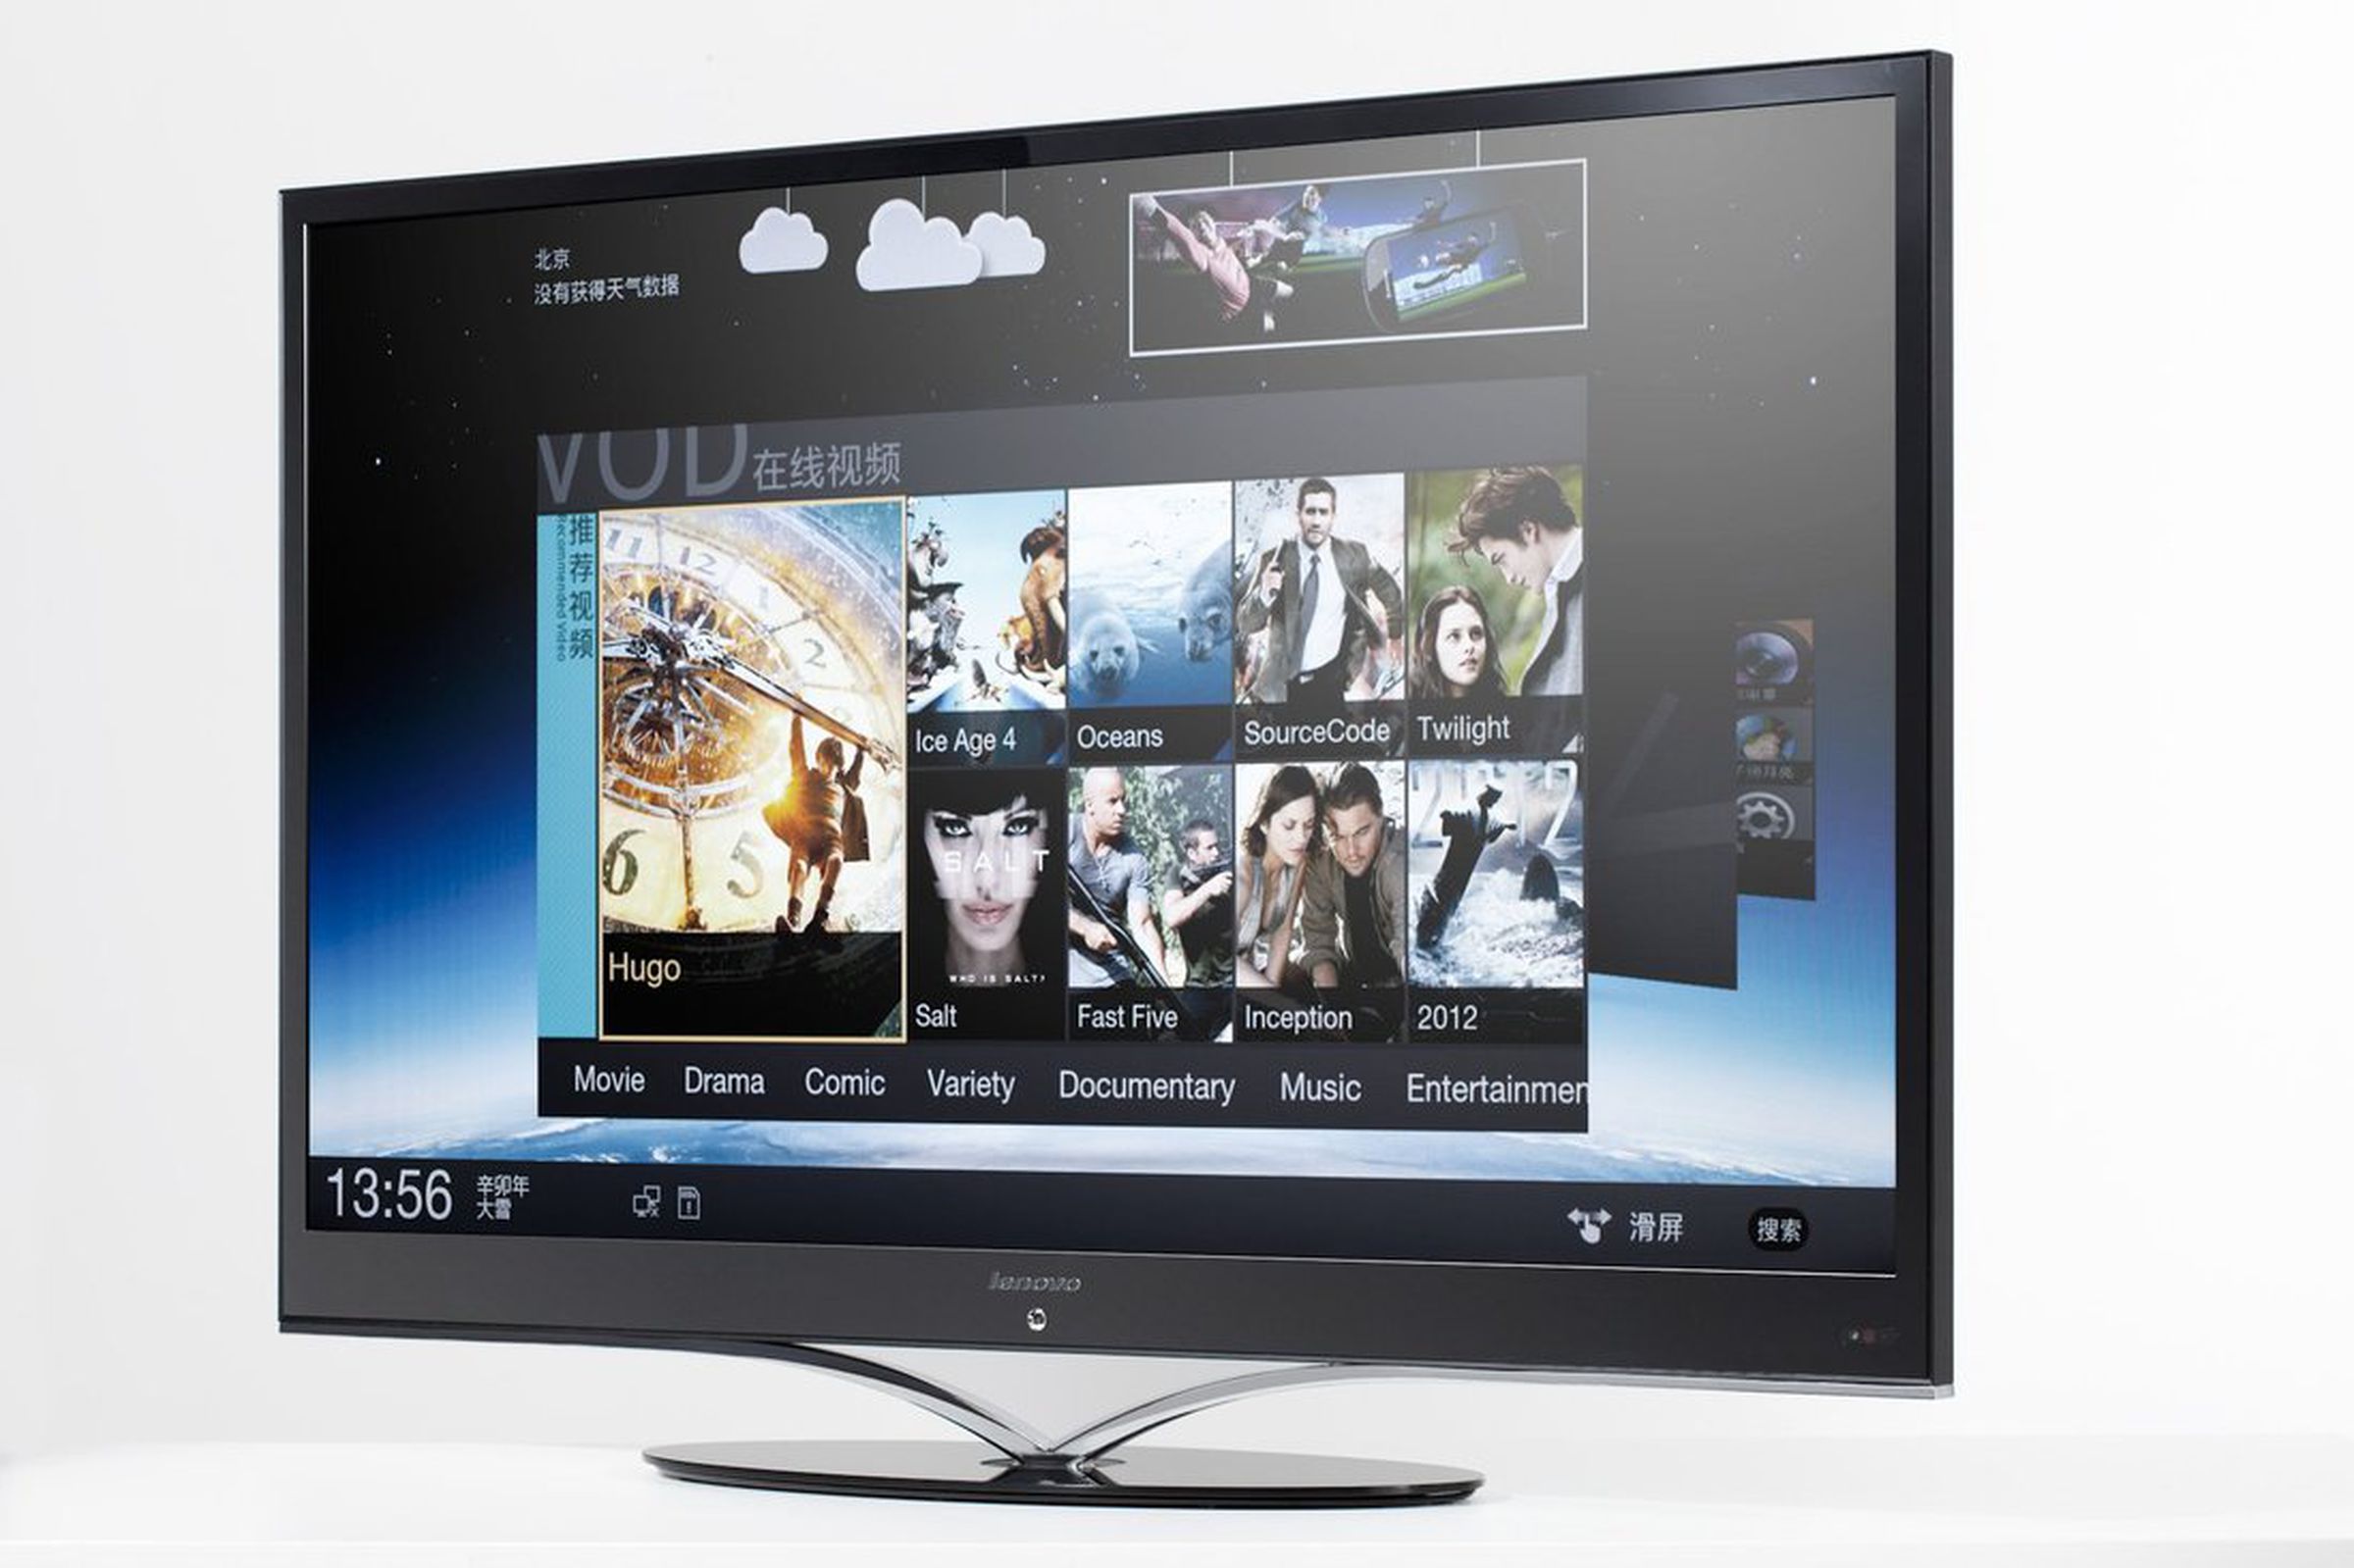 Lenovo K91 Smart TV gallery